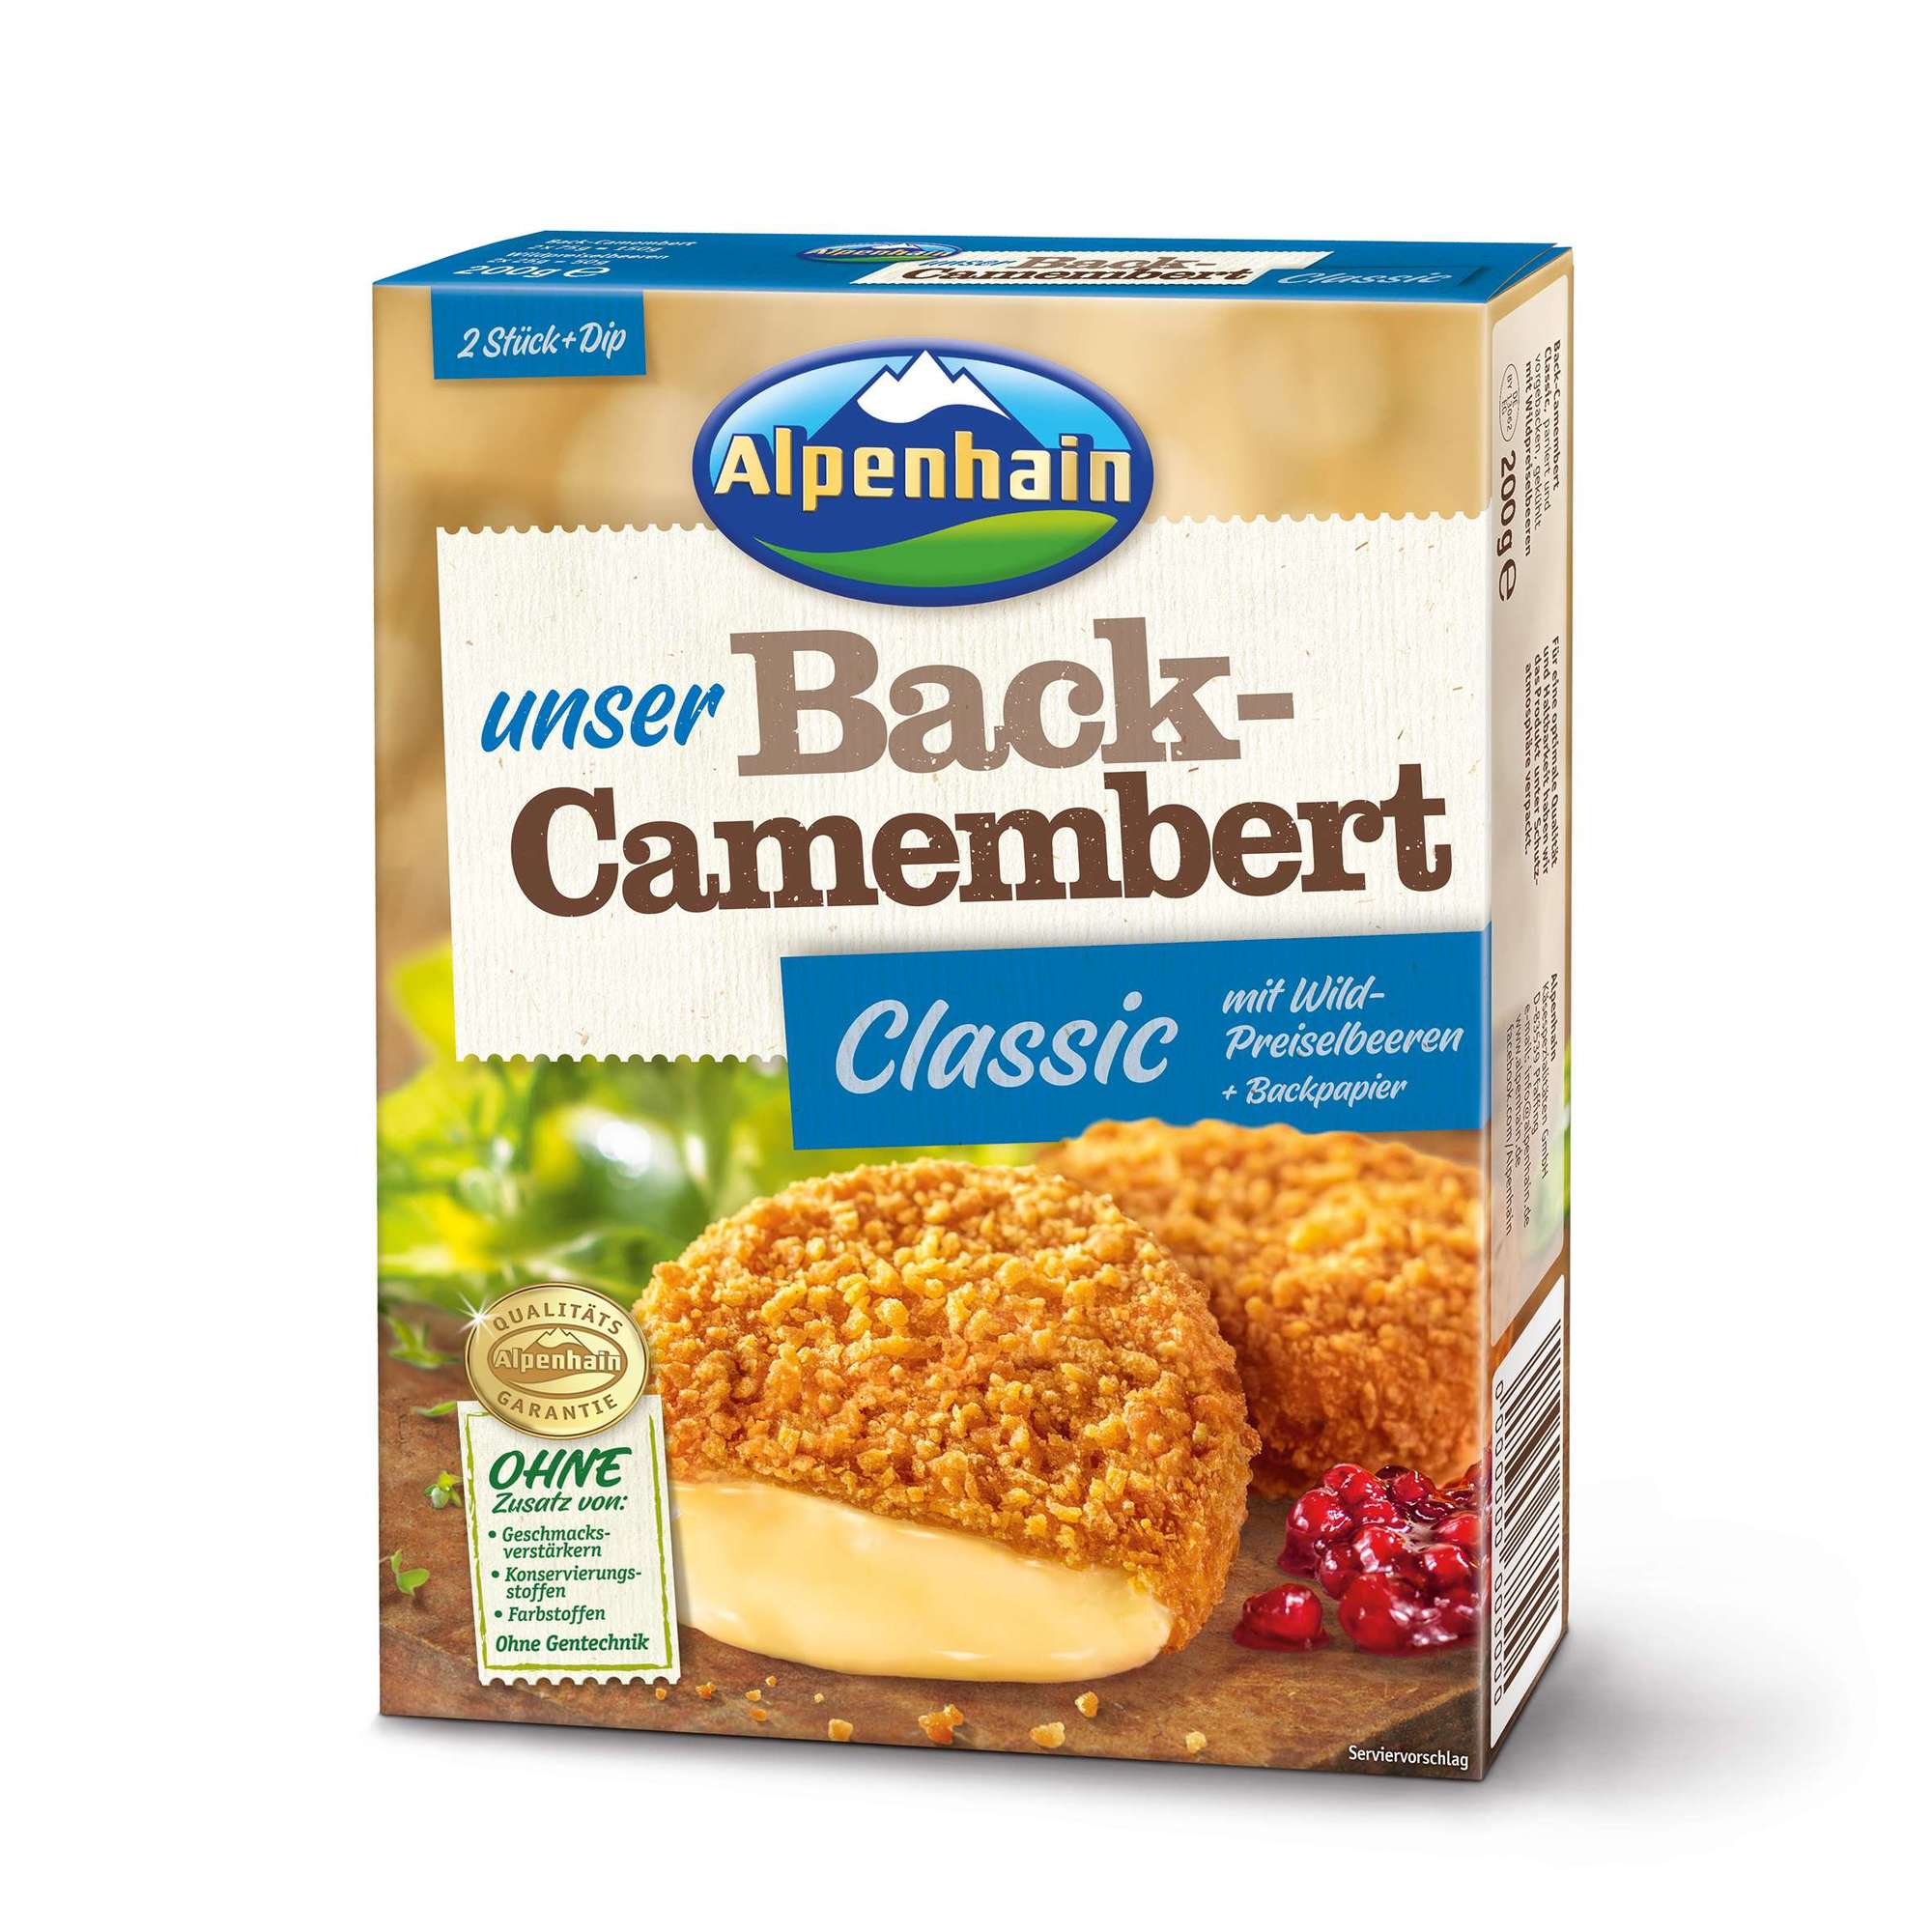 Back-Camembert Classic mit Wildpreiselbeeren 200g